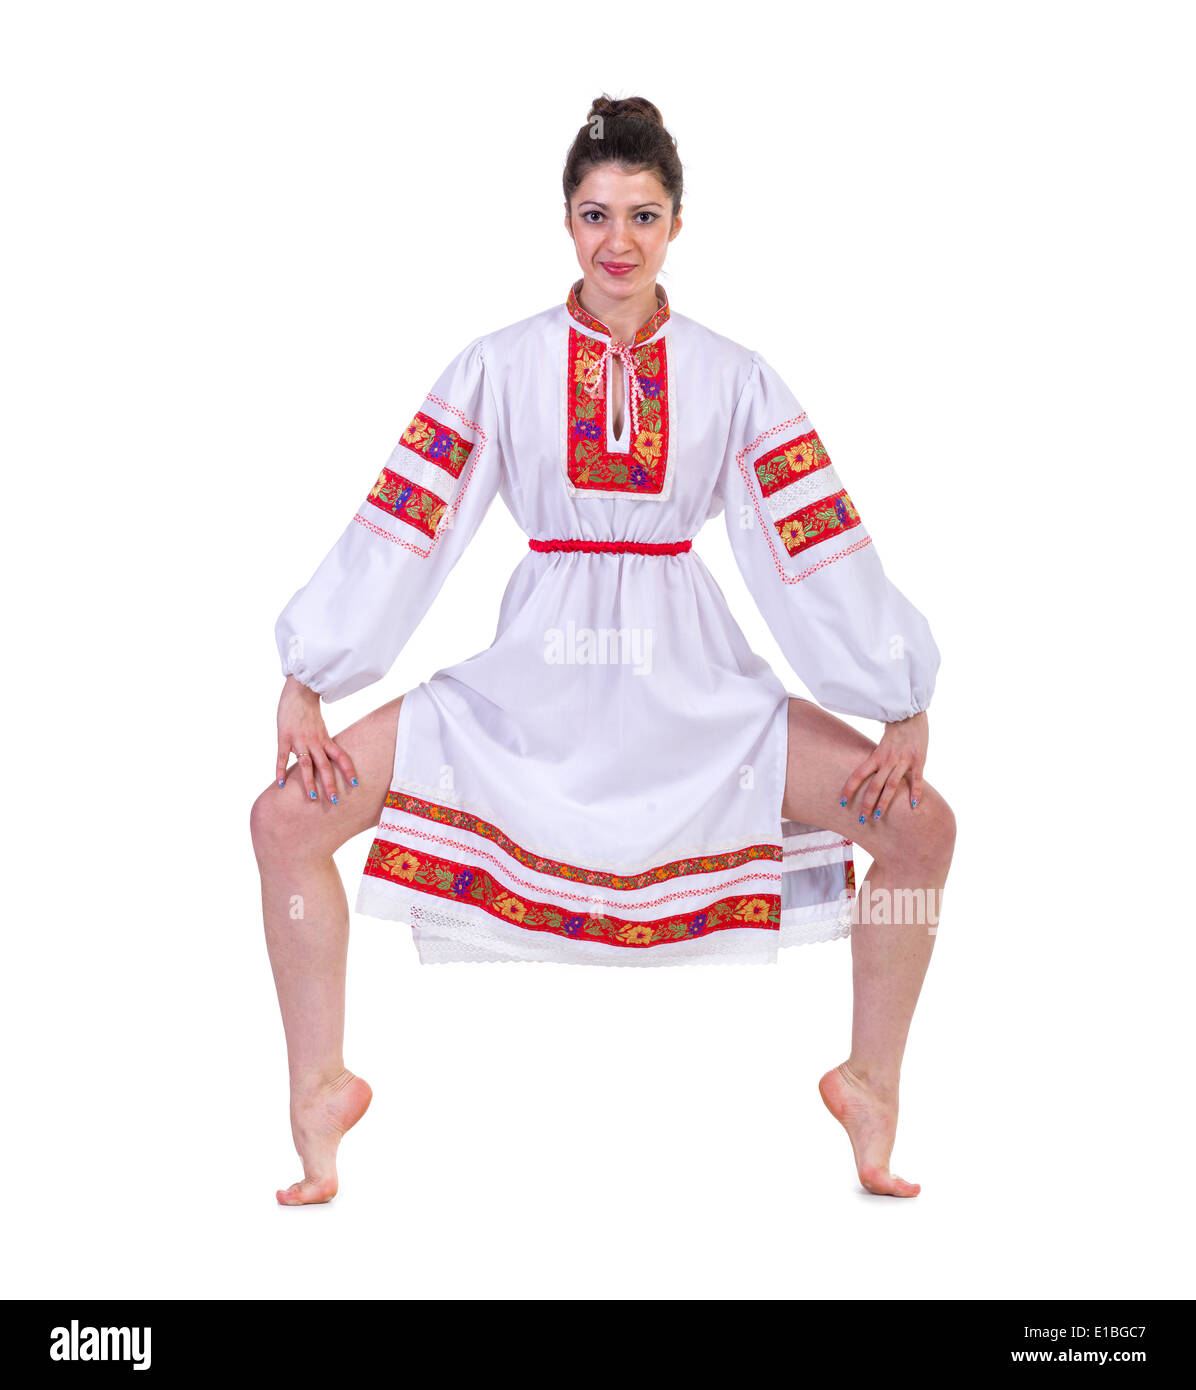 schöne Tänzerin in der ukrainischen polnischen nationalen Tracht Kleidung zufrieden Lächeln, isoliert in voller Länge portrait Stockfoto